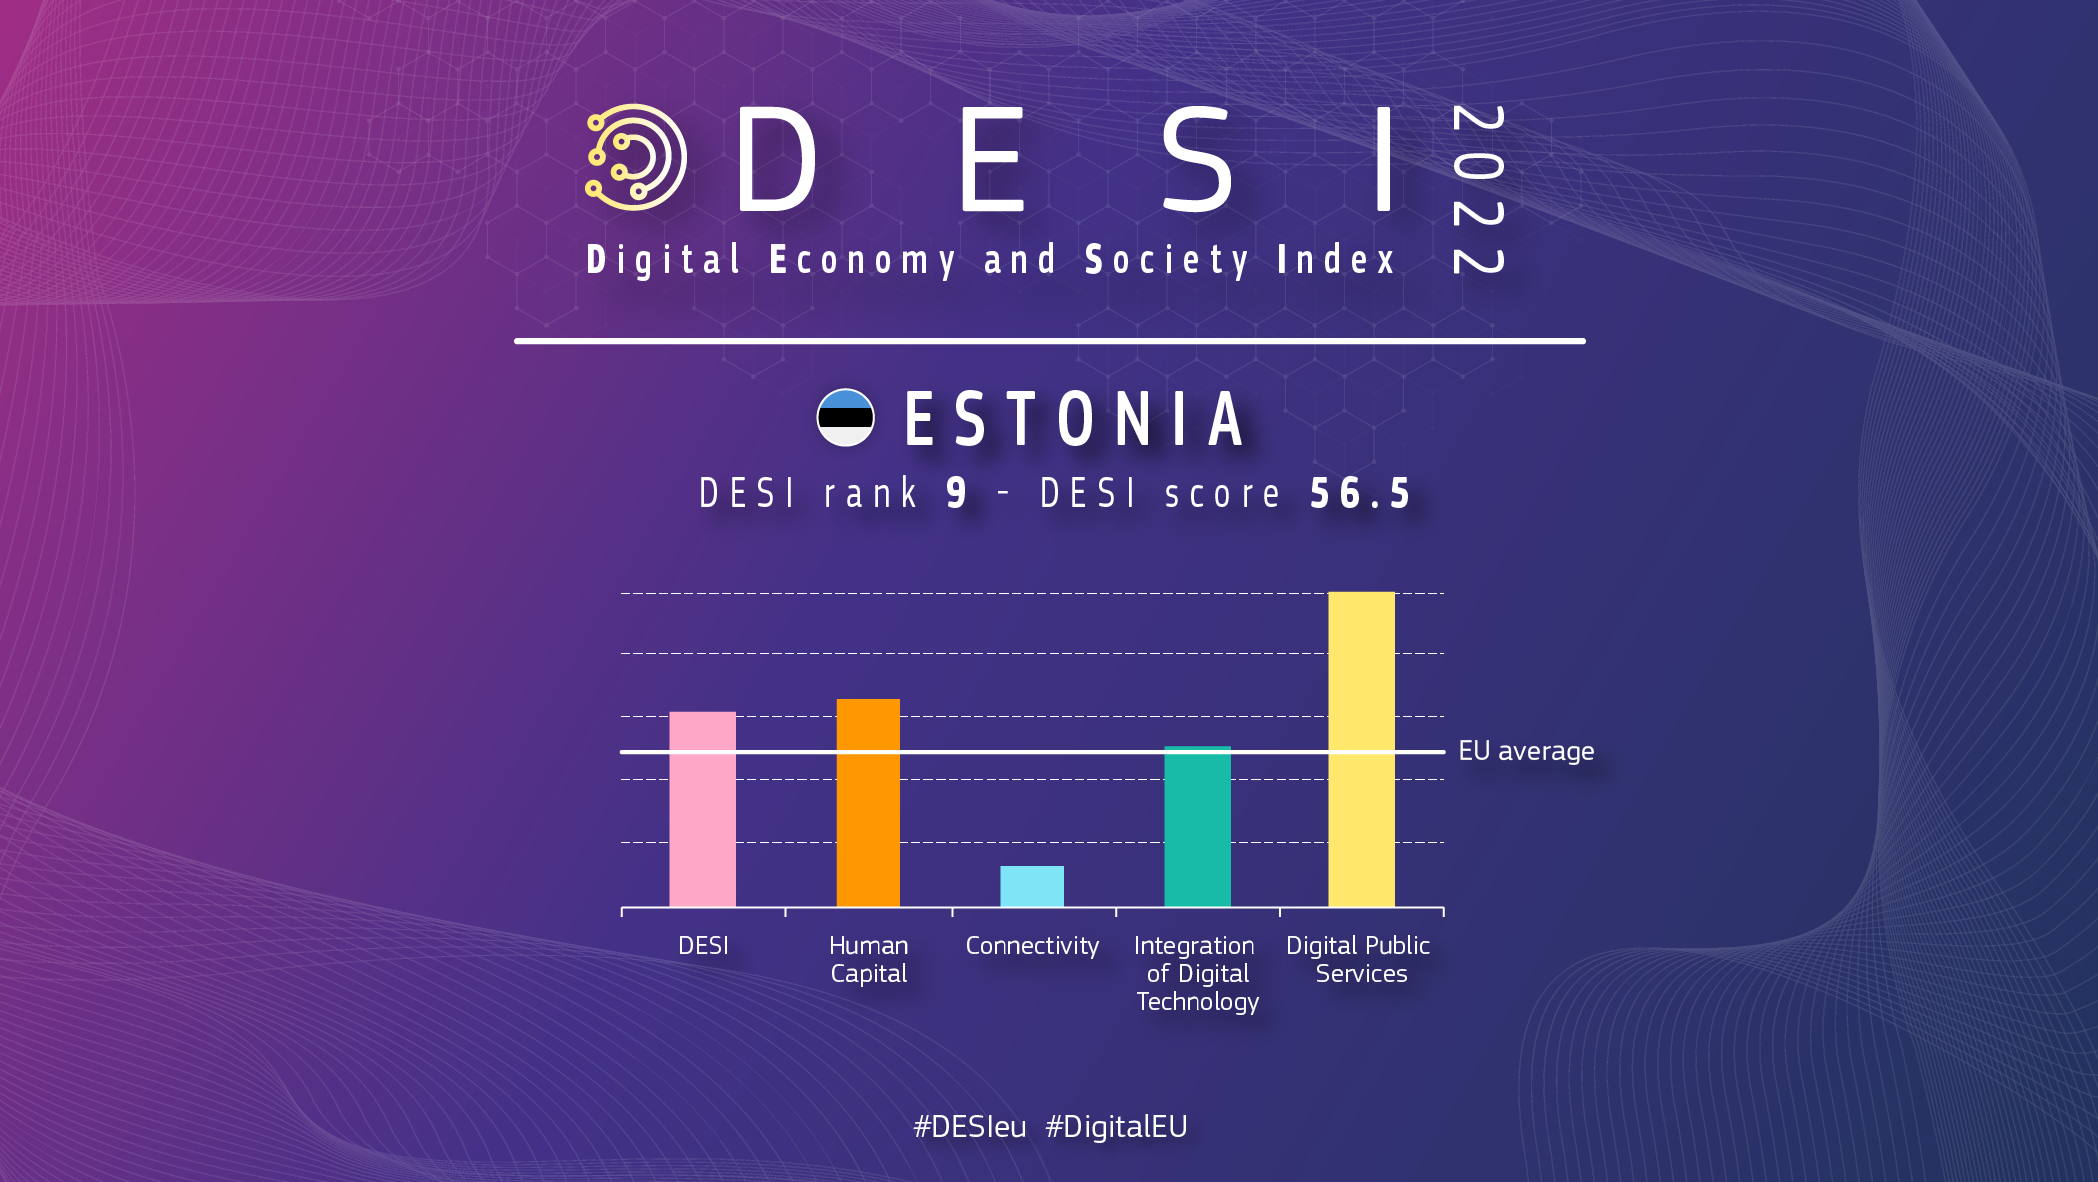 Panoramica grafica dell'Estonia in DESI che mostra una classifica di 9 e un punteggio di 56,5